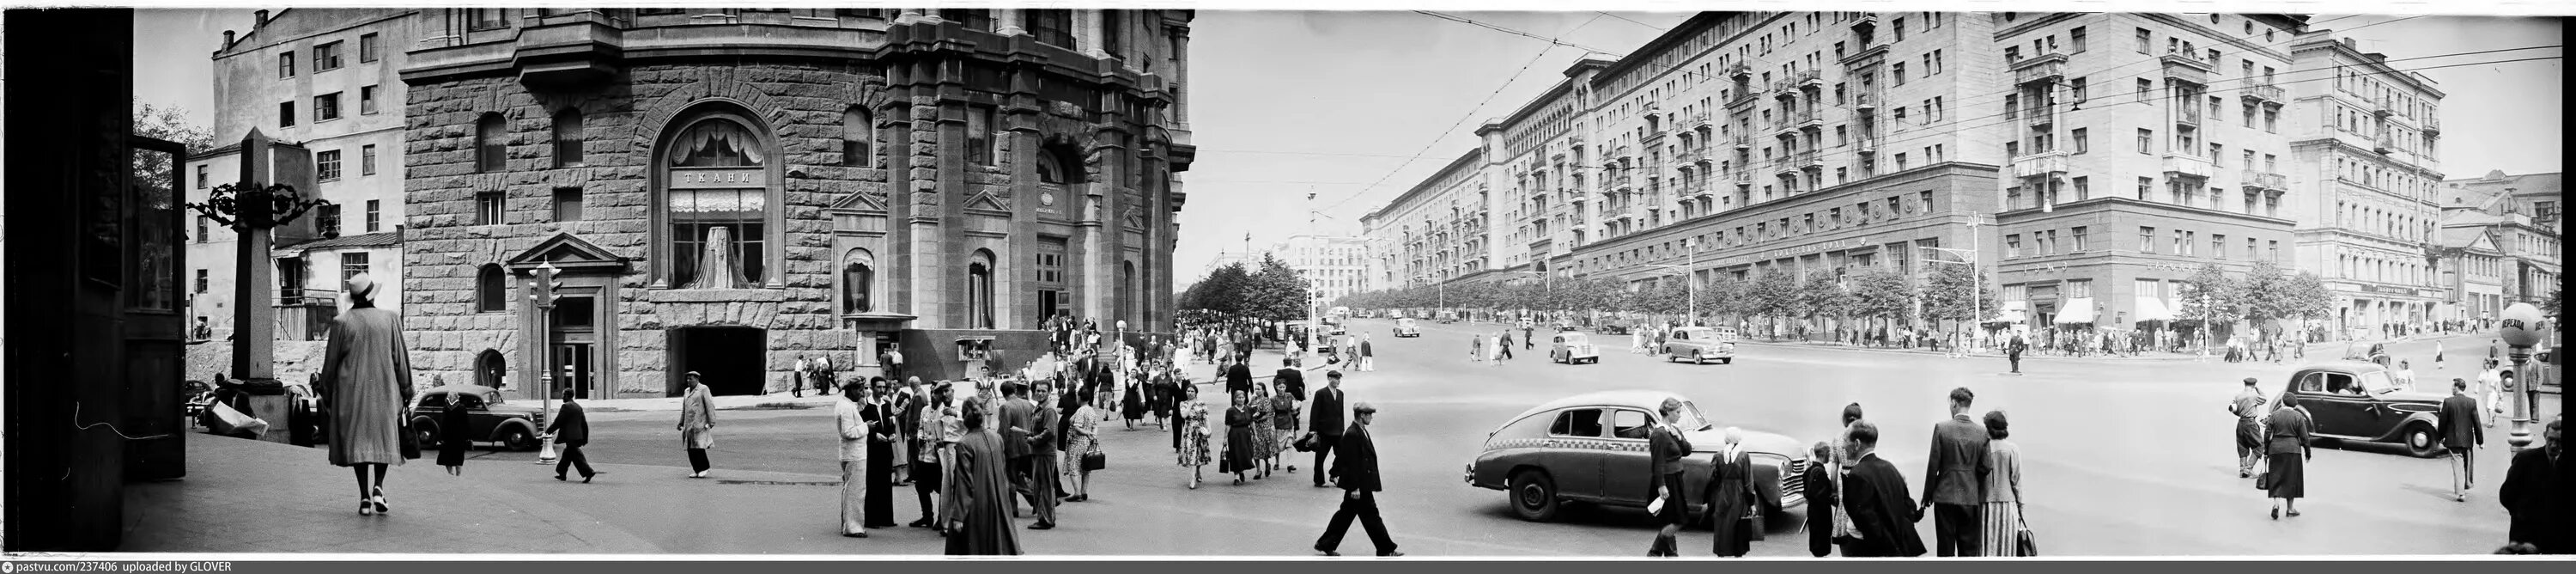 Тверская улица 1989. Moscow 1951. Газетный переулок 19 век.